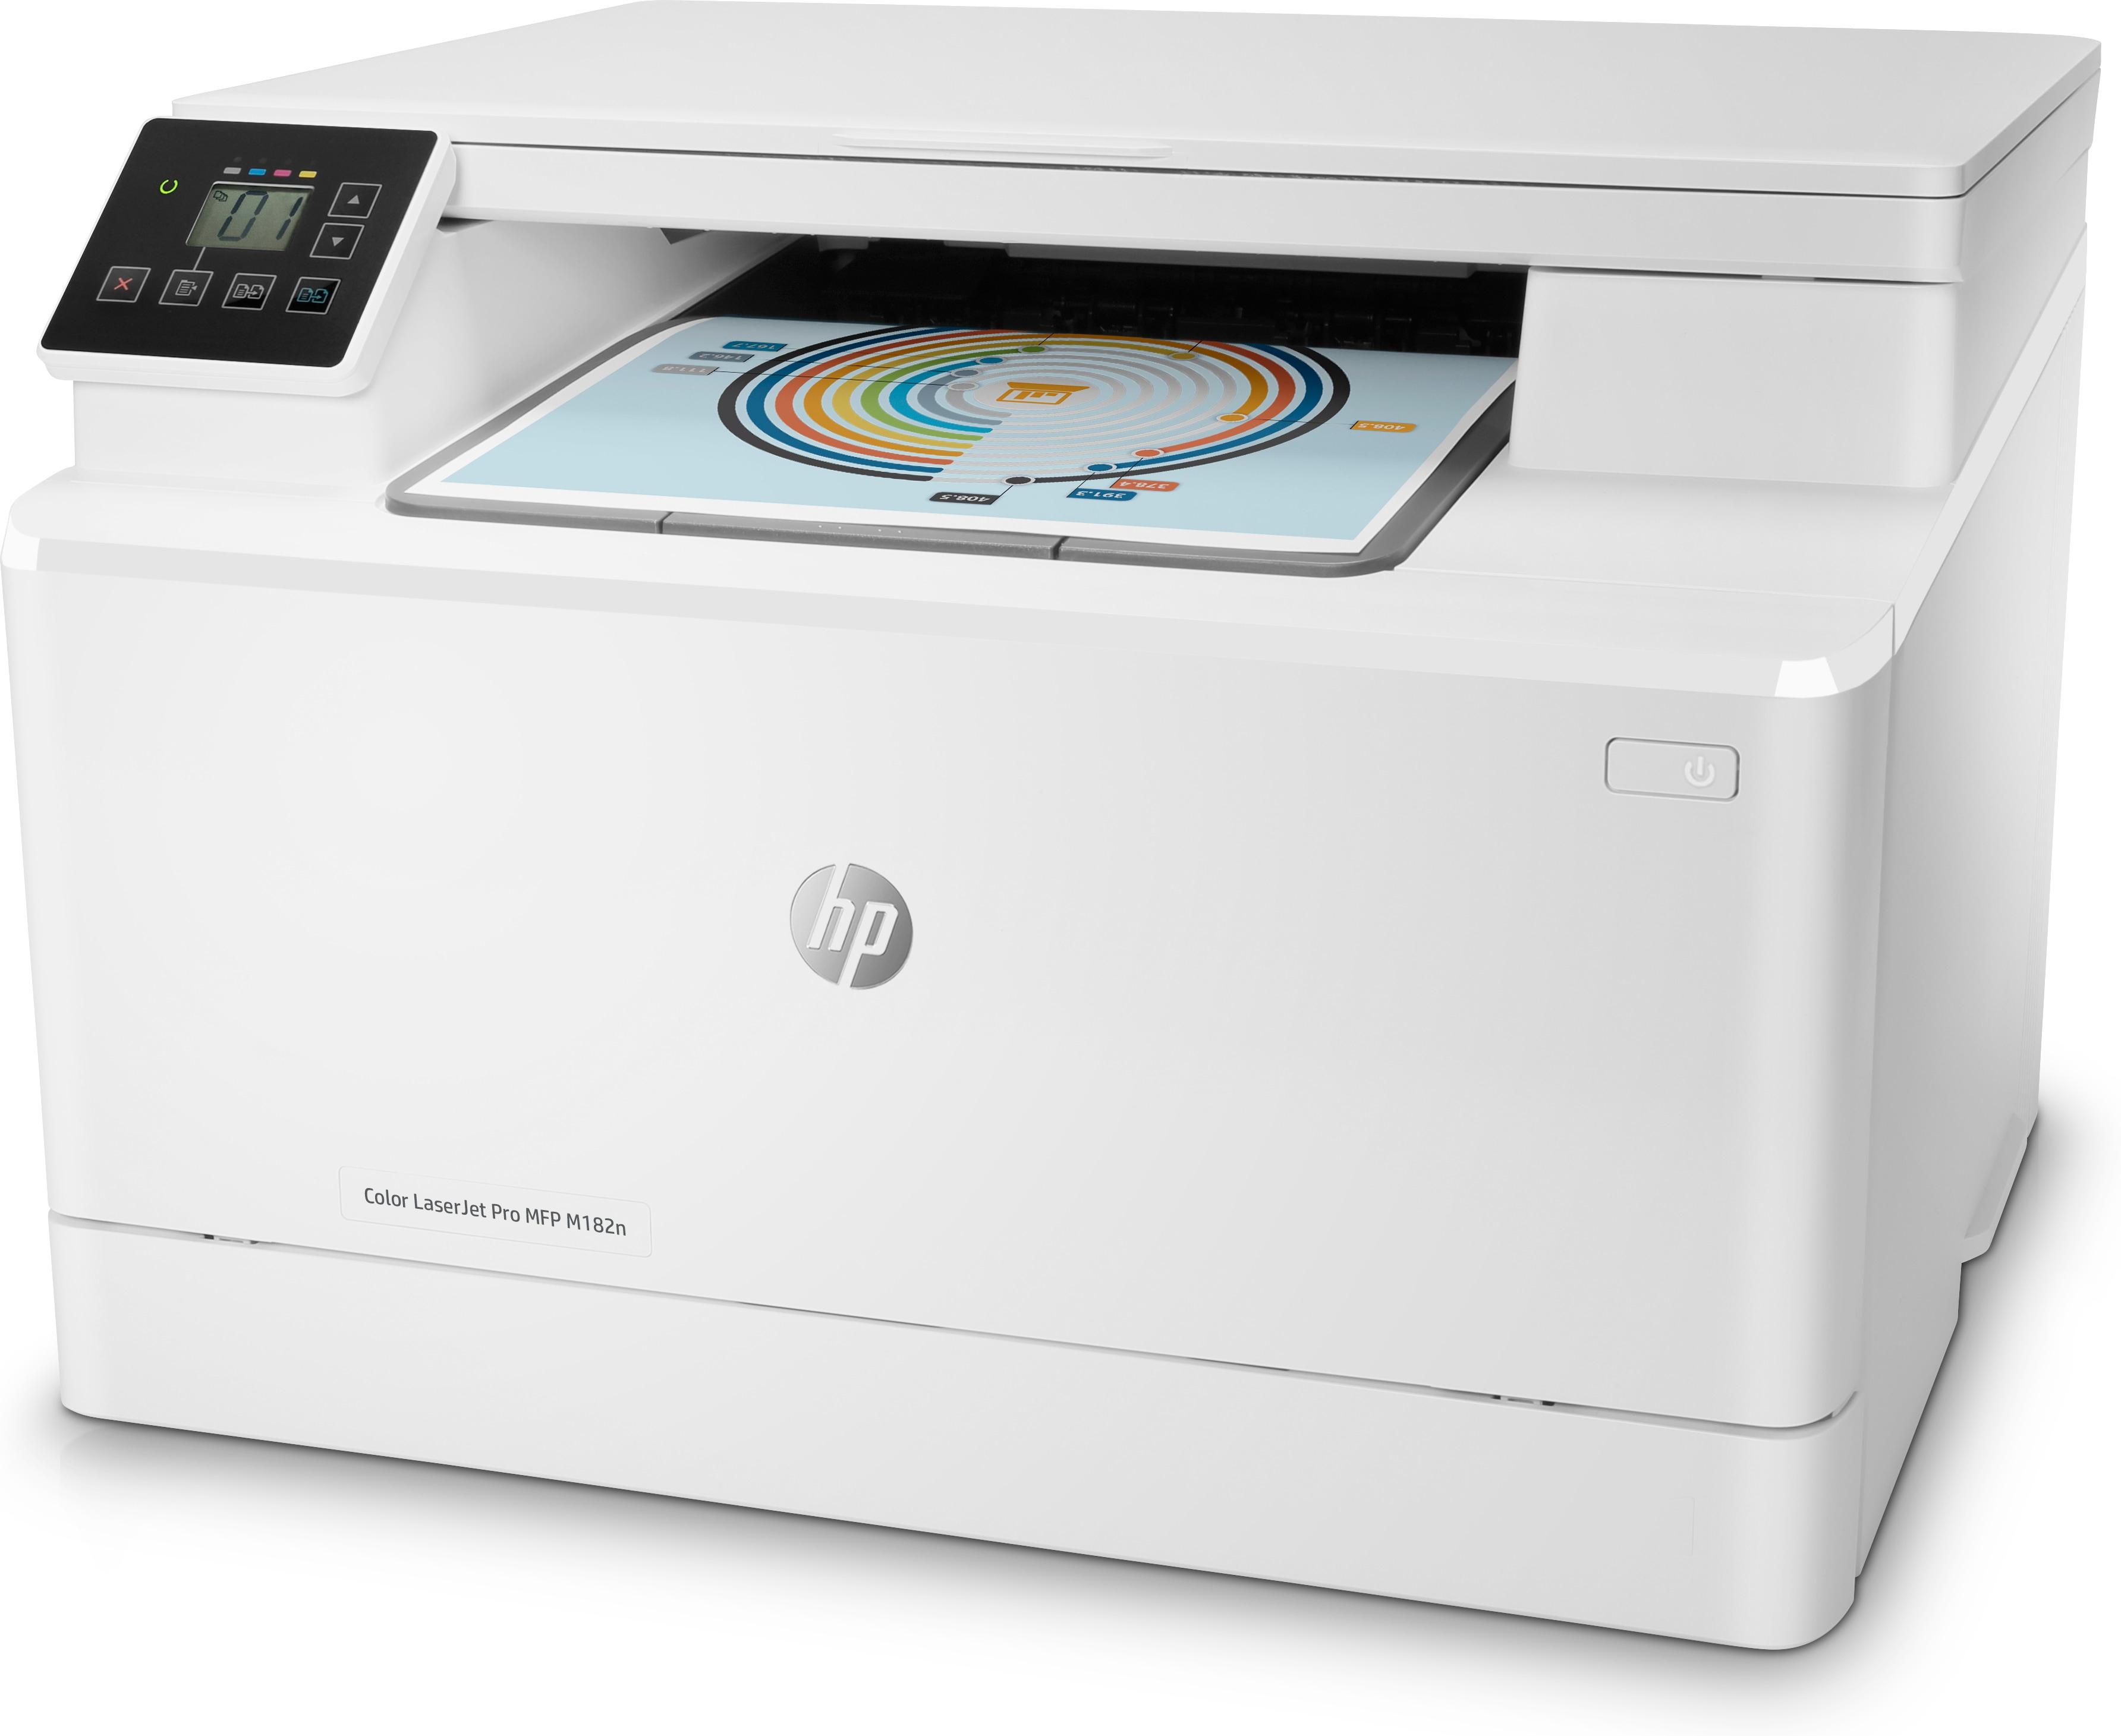 Náplně do tiskárny HP Color LaserJet Pro MFP M182n